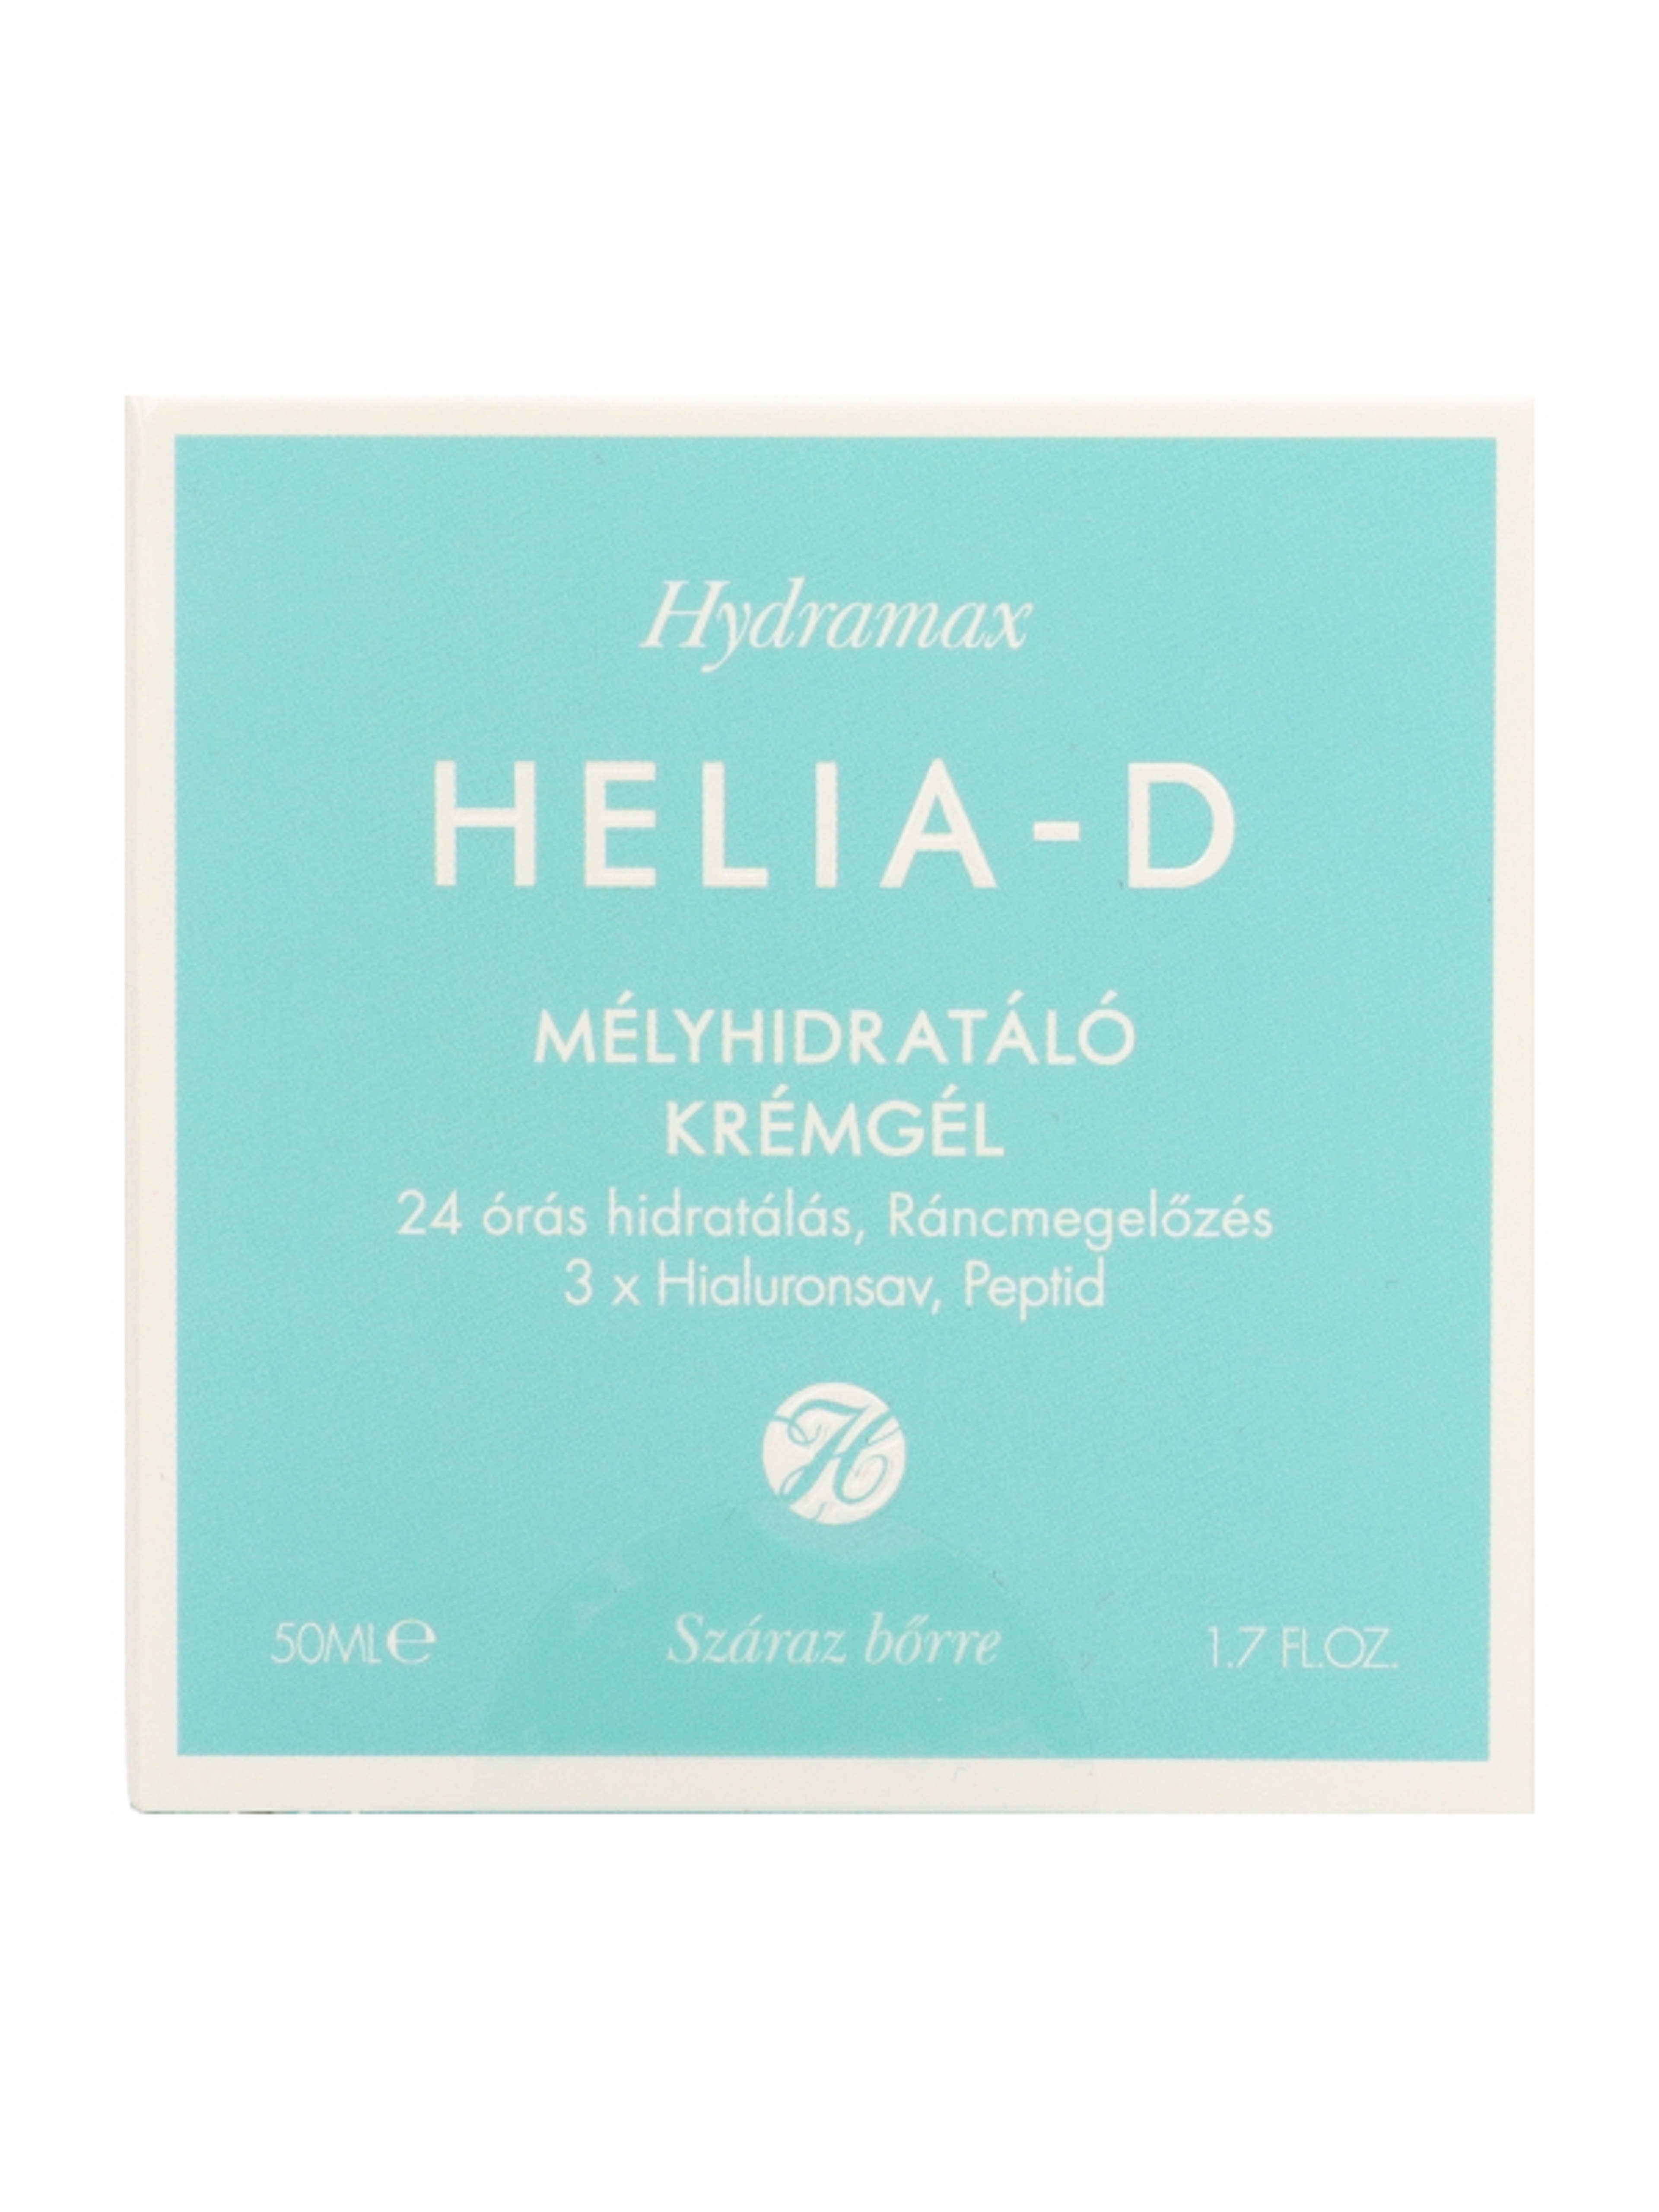 Helia-D Hydramax mélyhidratáló krémgél száraz bőrre - 50 ml-1